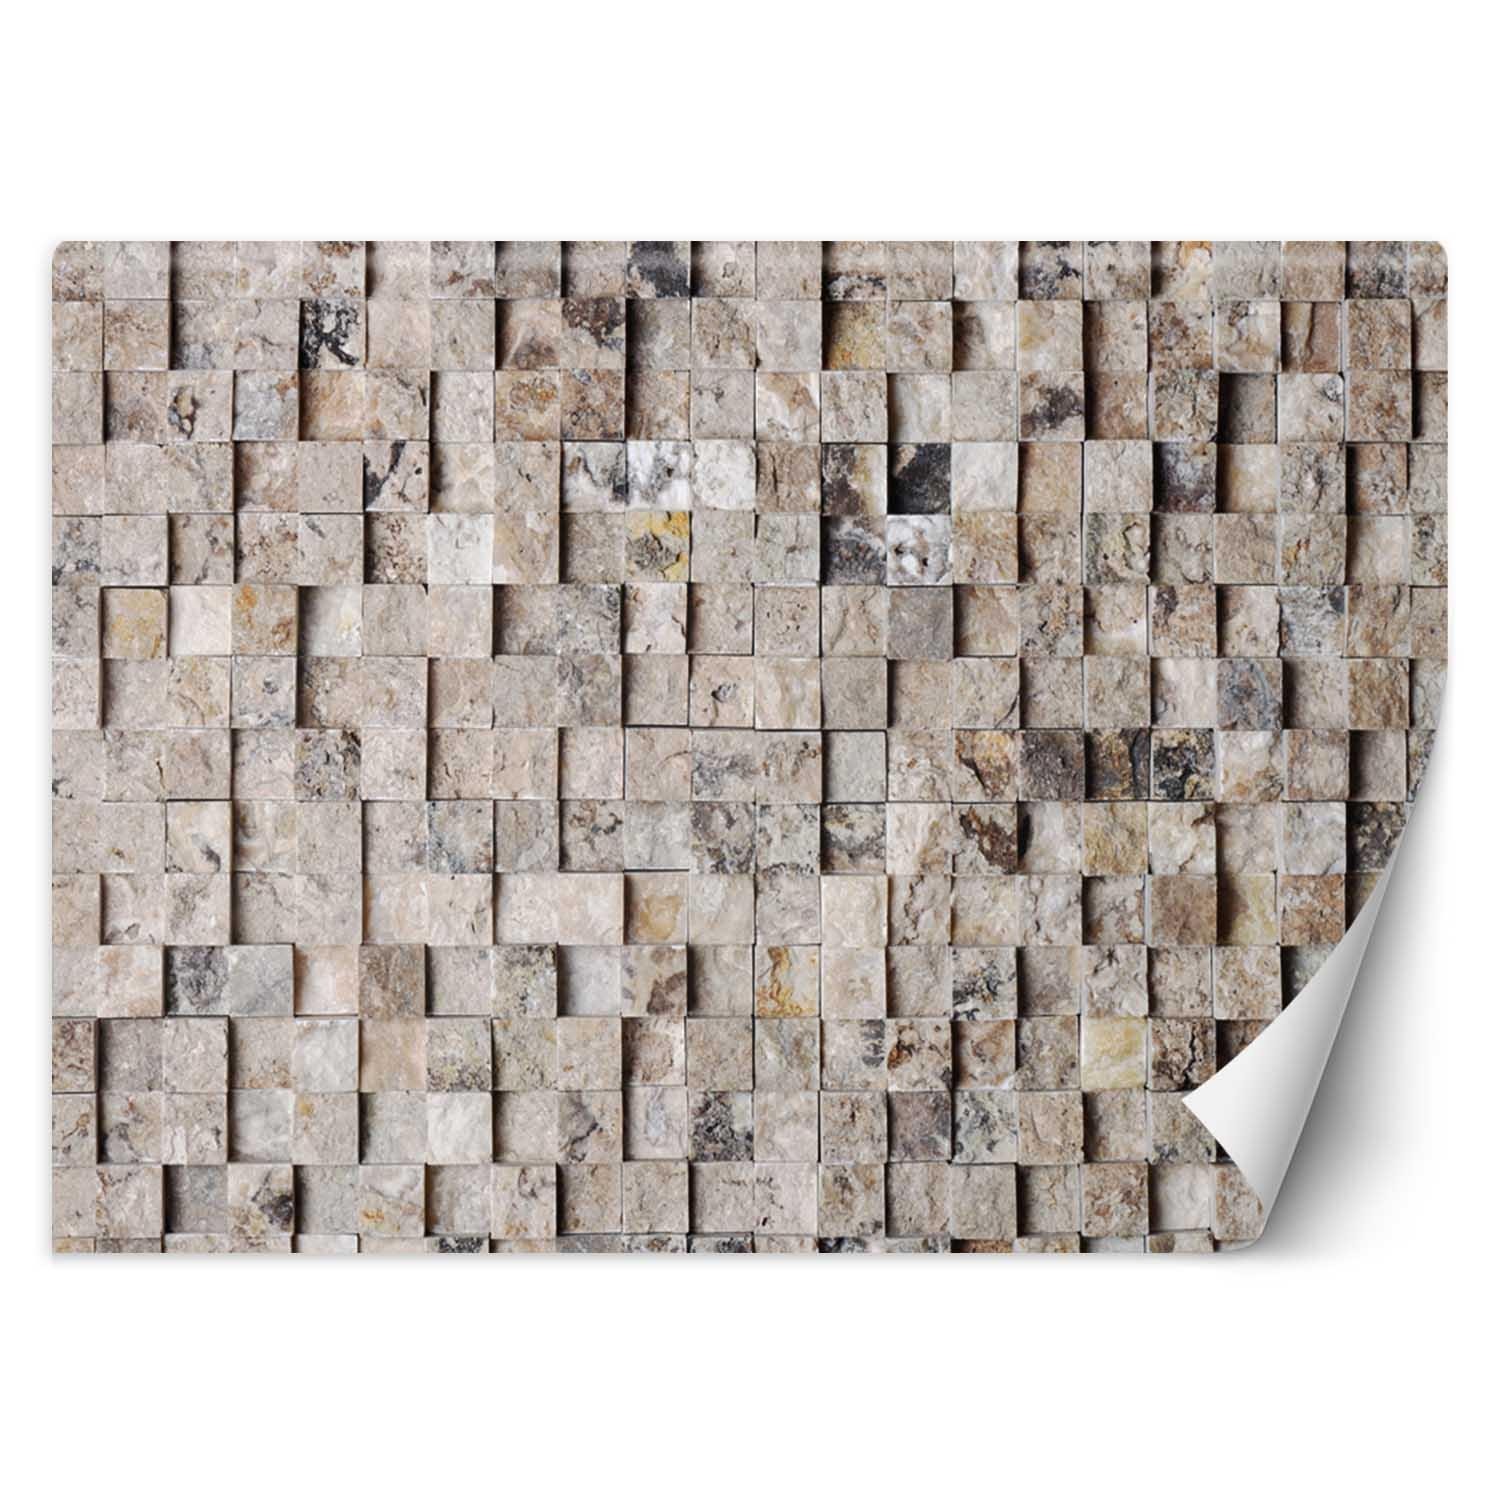 Trend24 – Behang – Lichte Stenen Muur – Behangpapier – Behang Woonkamer – Fotobehang – 450x315x2 cm – Incl. behanglijm